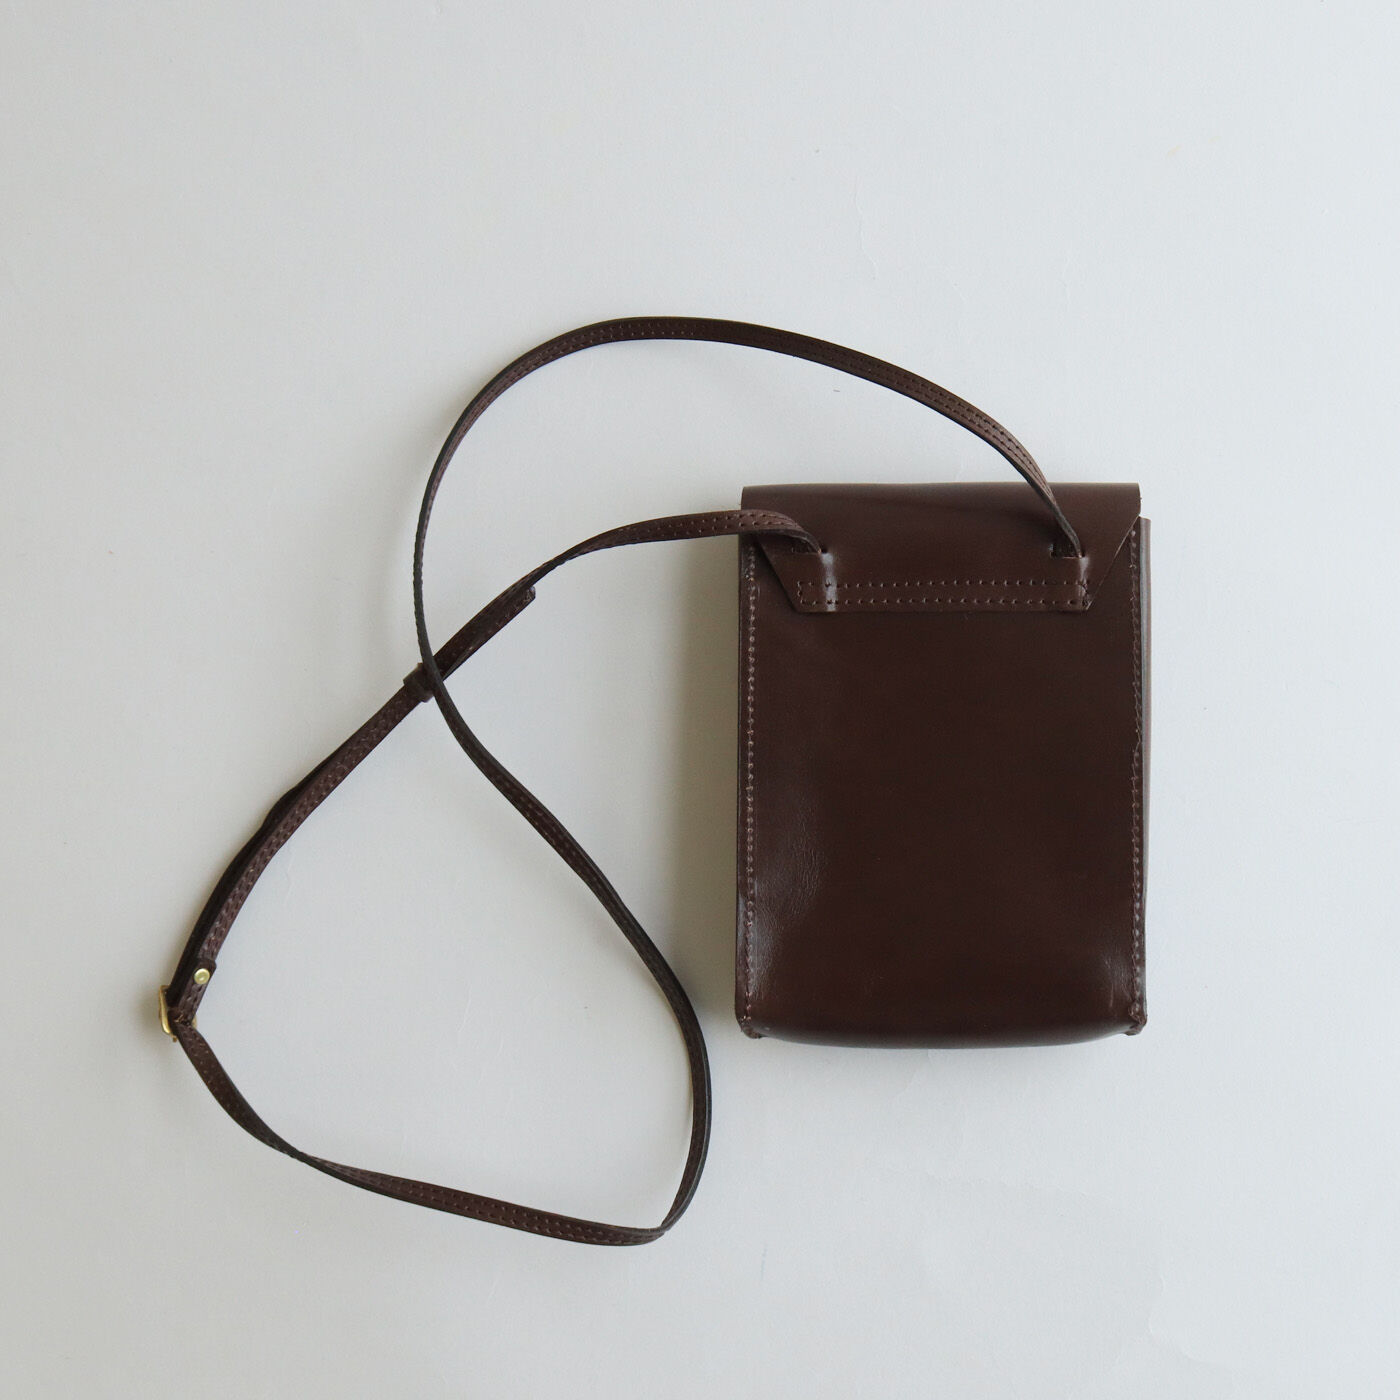 ＆Stories|福岡の鞄作家と作った 職人本革のアーネストバッグ〈ウッドブラウン〉|細めのショルダーはオールレザー製。